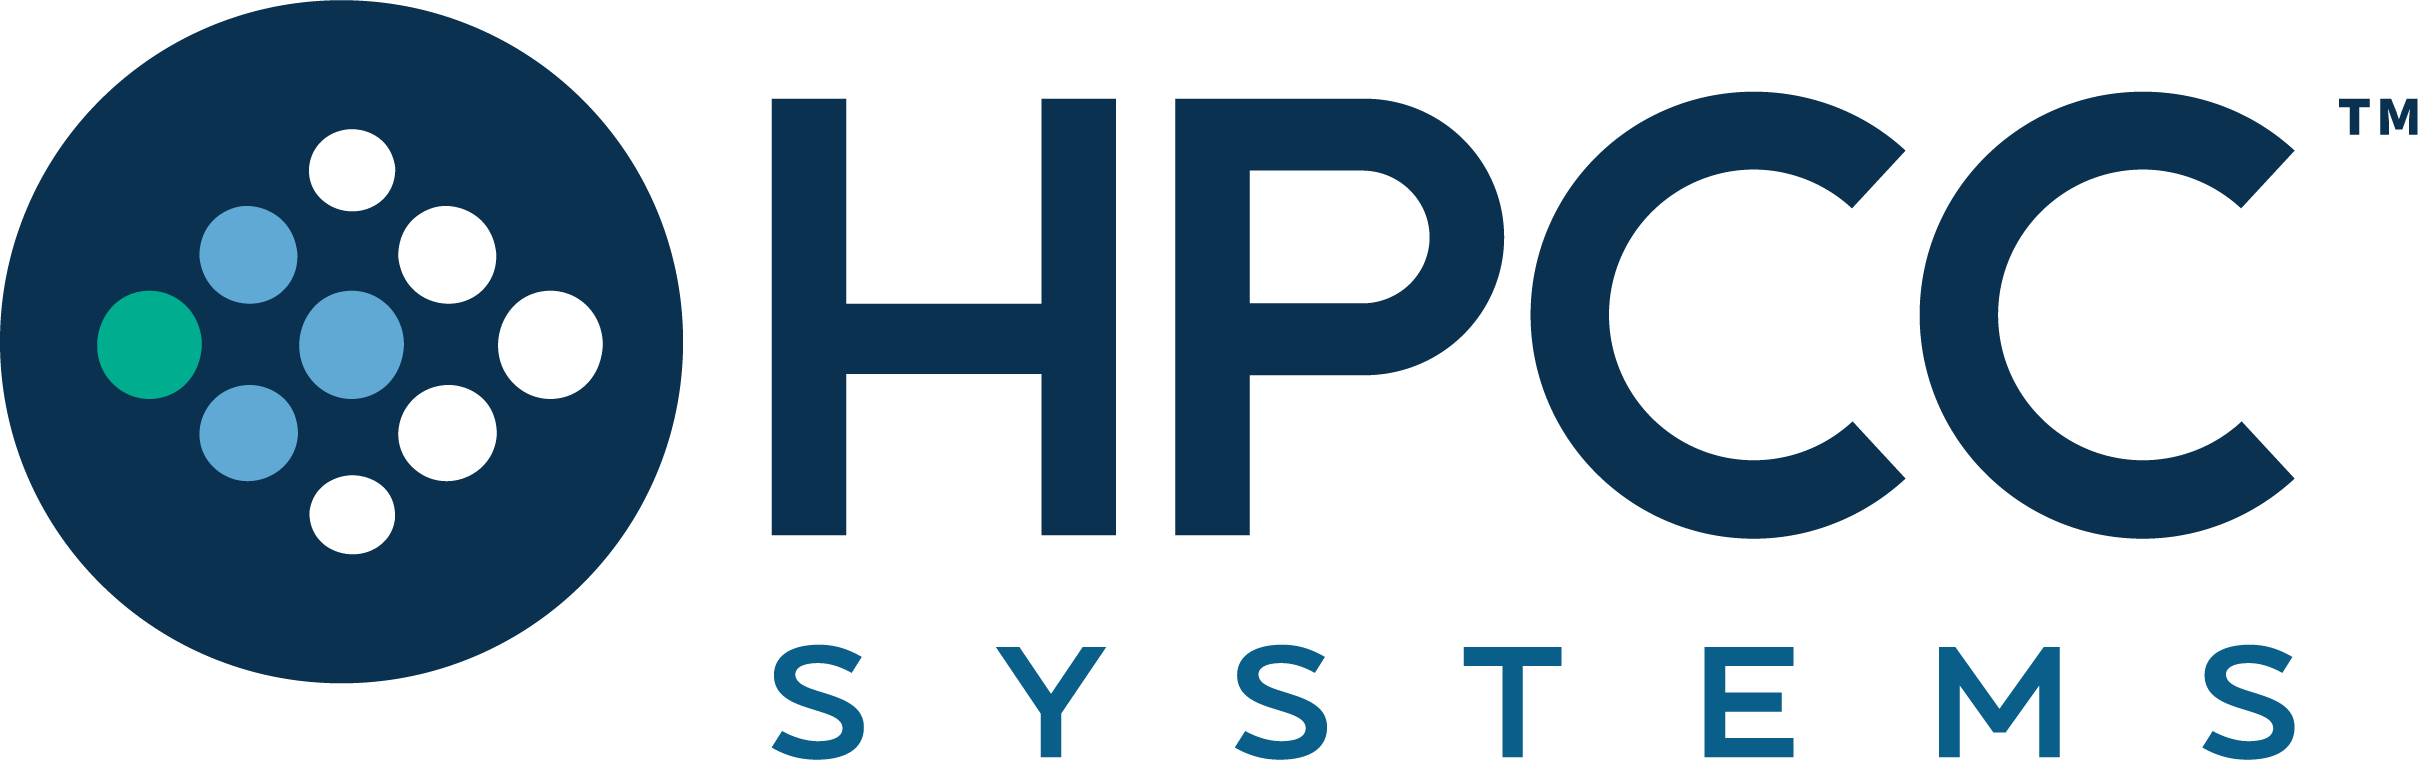 HPCC Systems company logo